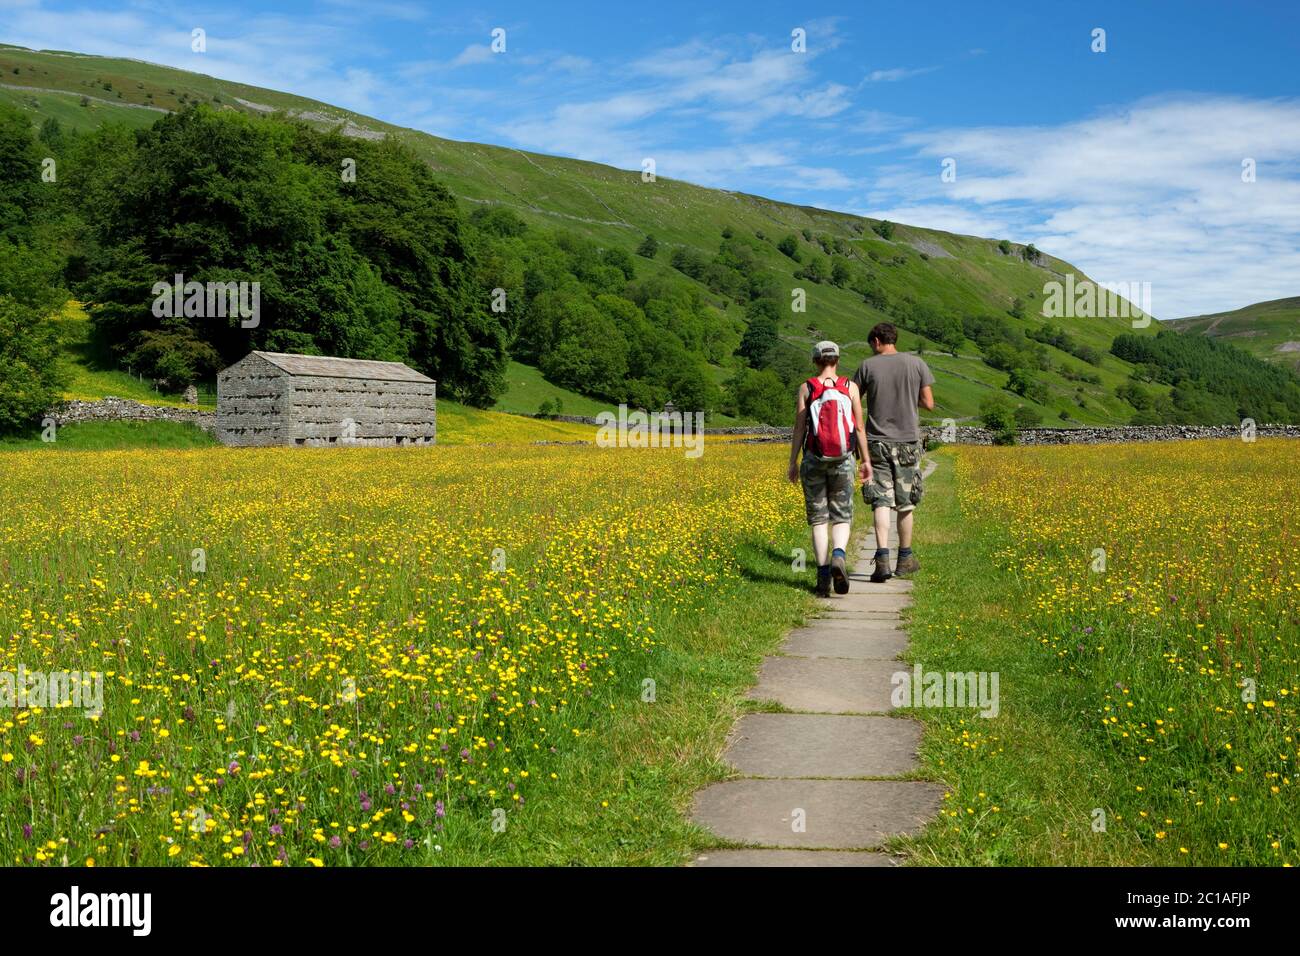 Wanderer zwischen Buttercup gefüllte Wiese in Swaledale Tal, Muker, Yorkshire Dales Nationalpark, North Yorkshire, England, Großbritannien, Europa Stockfoto